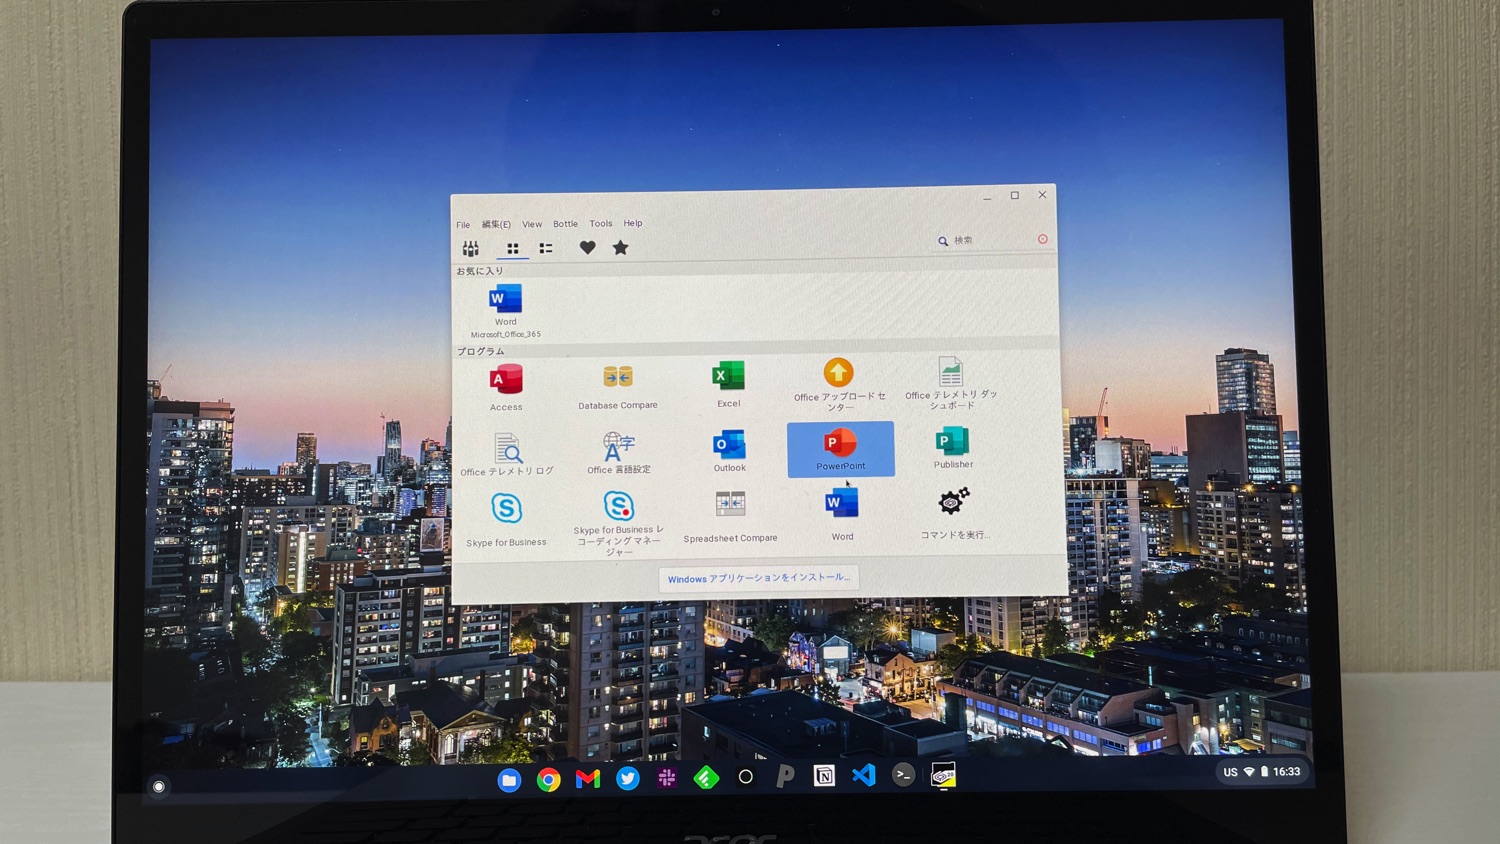 CrossOver Chrome OS